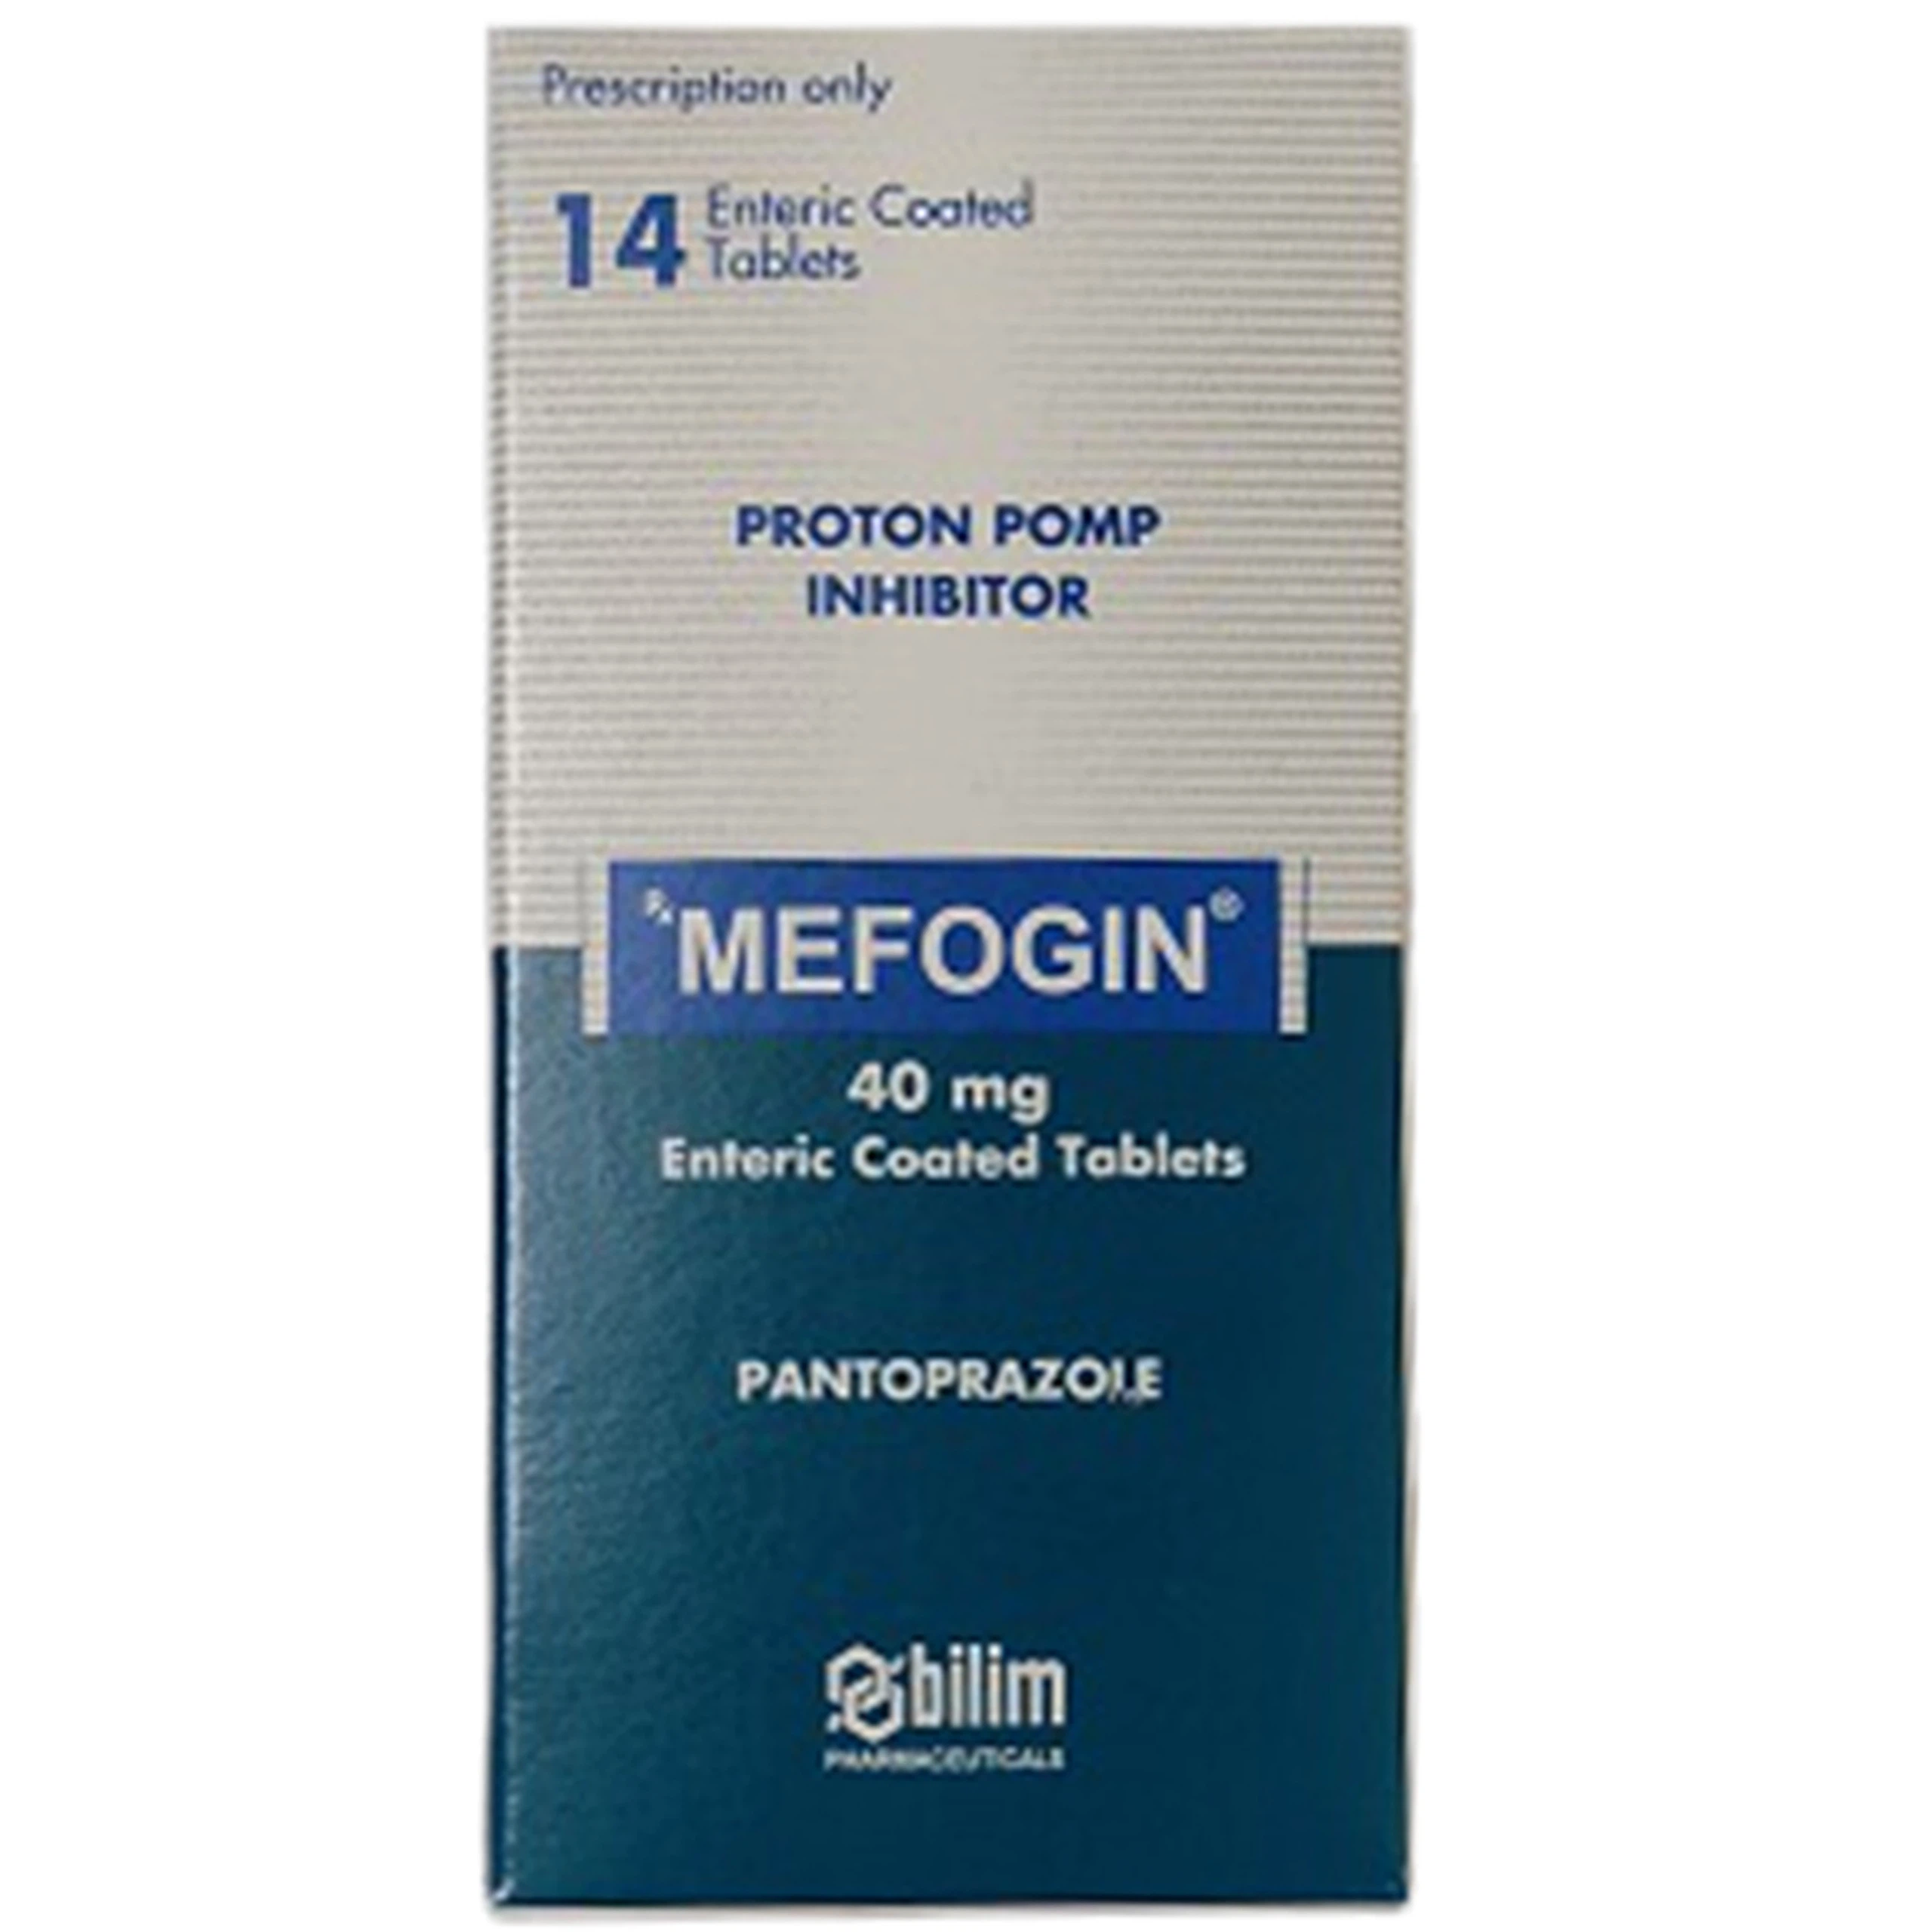 Thuốc Mefogin 40mg Bilim Ilac điều trị viêm loét dạ dày tá tràng, bệnh lý do hội chứng Zolliger – Ellison (14 viên)